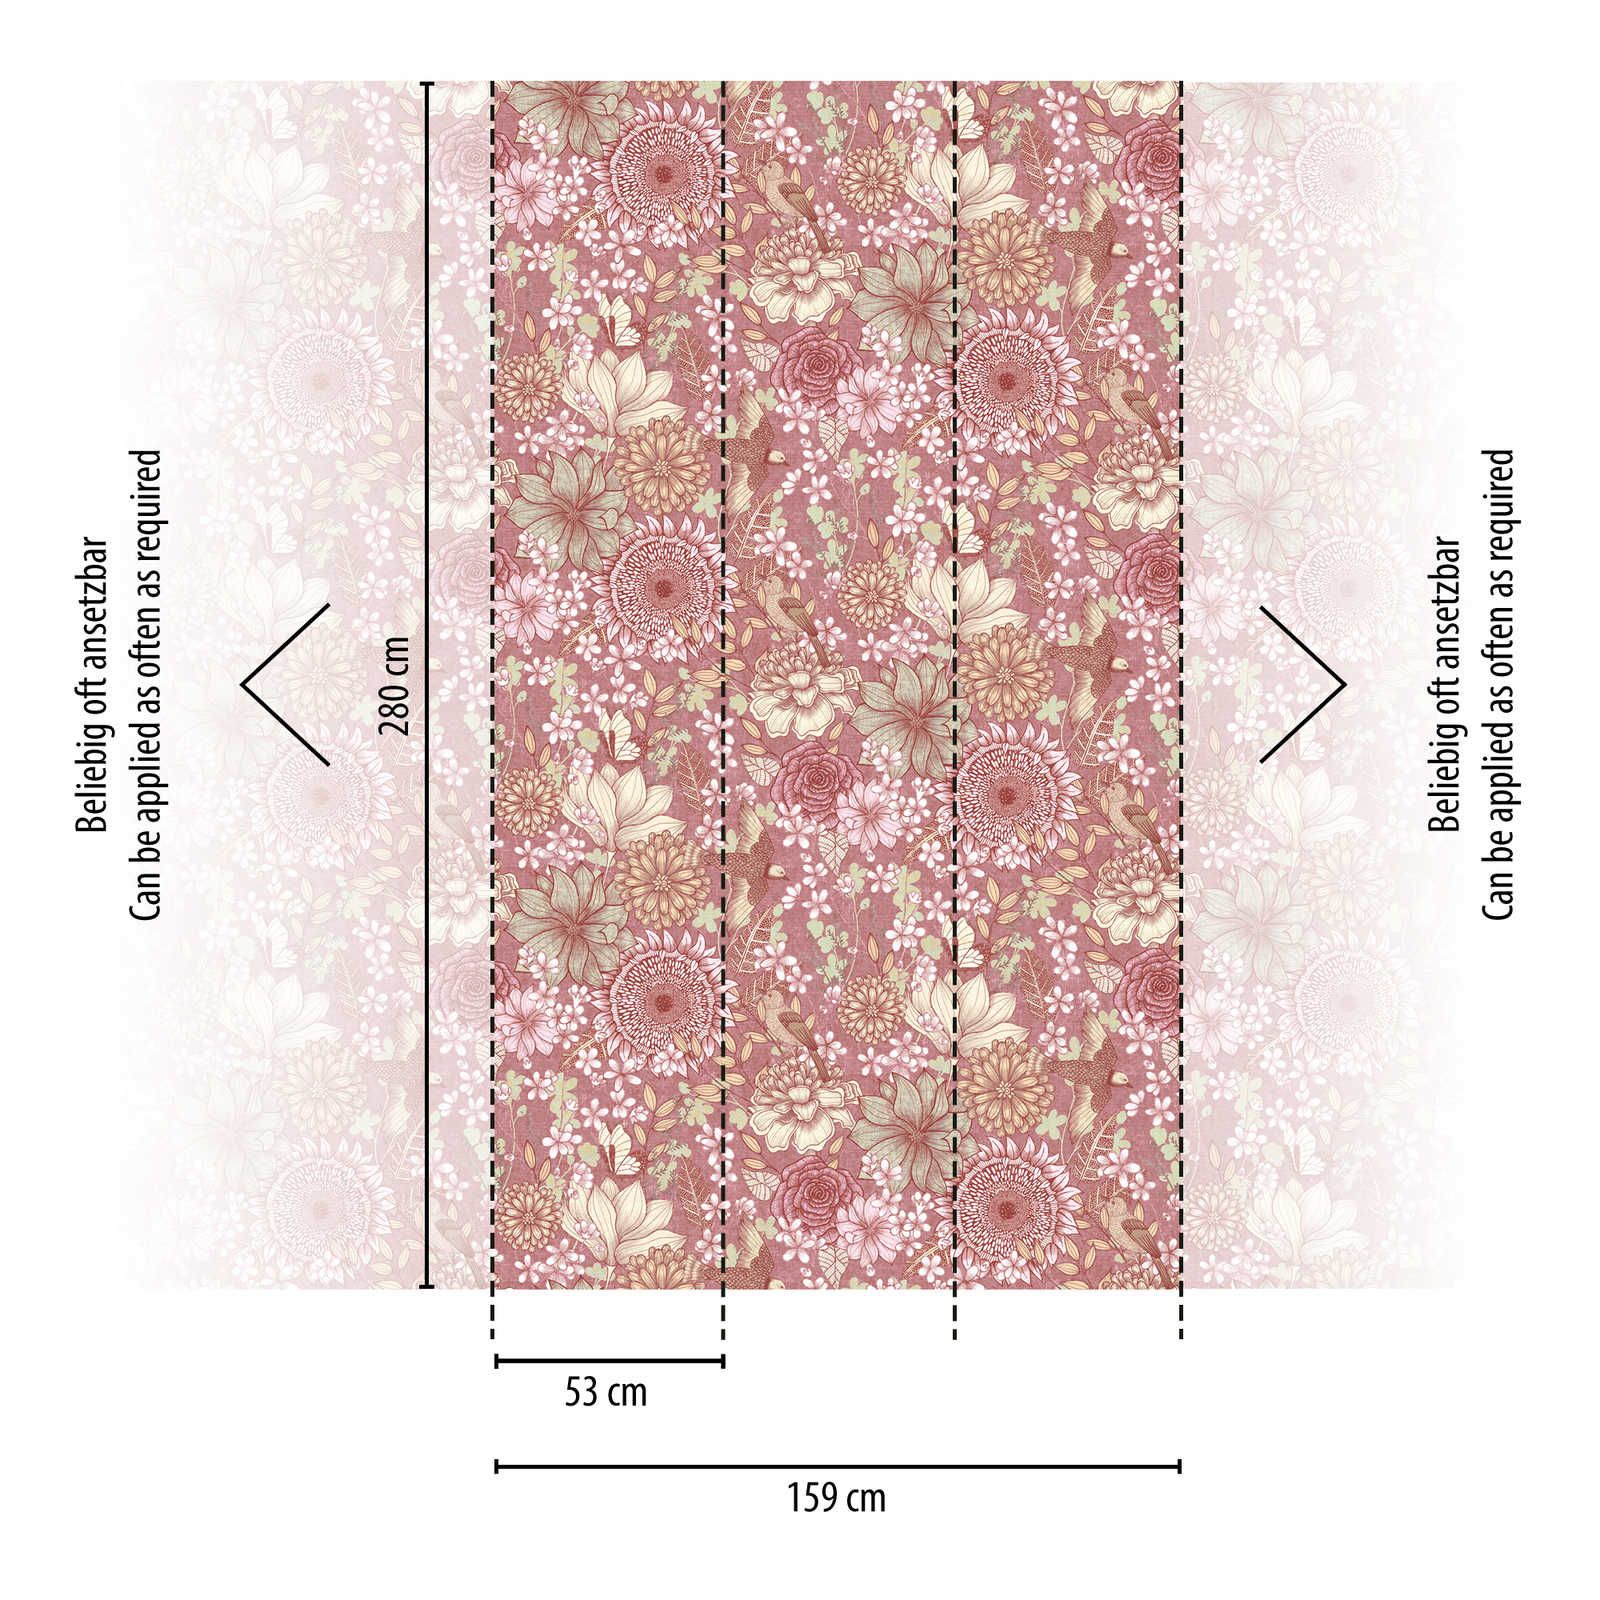             Carta da parati floreale in tessuto non tessuto con vari fiori e foglie - rosa, bianco, crema
        